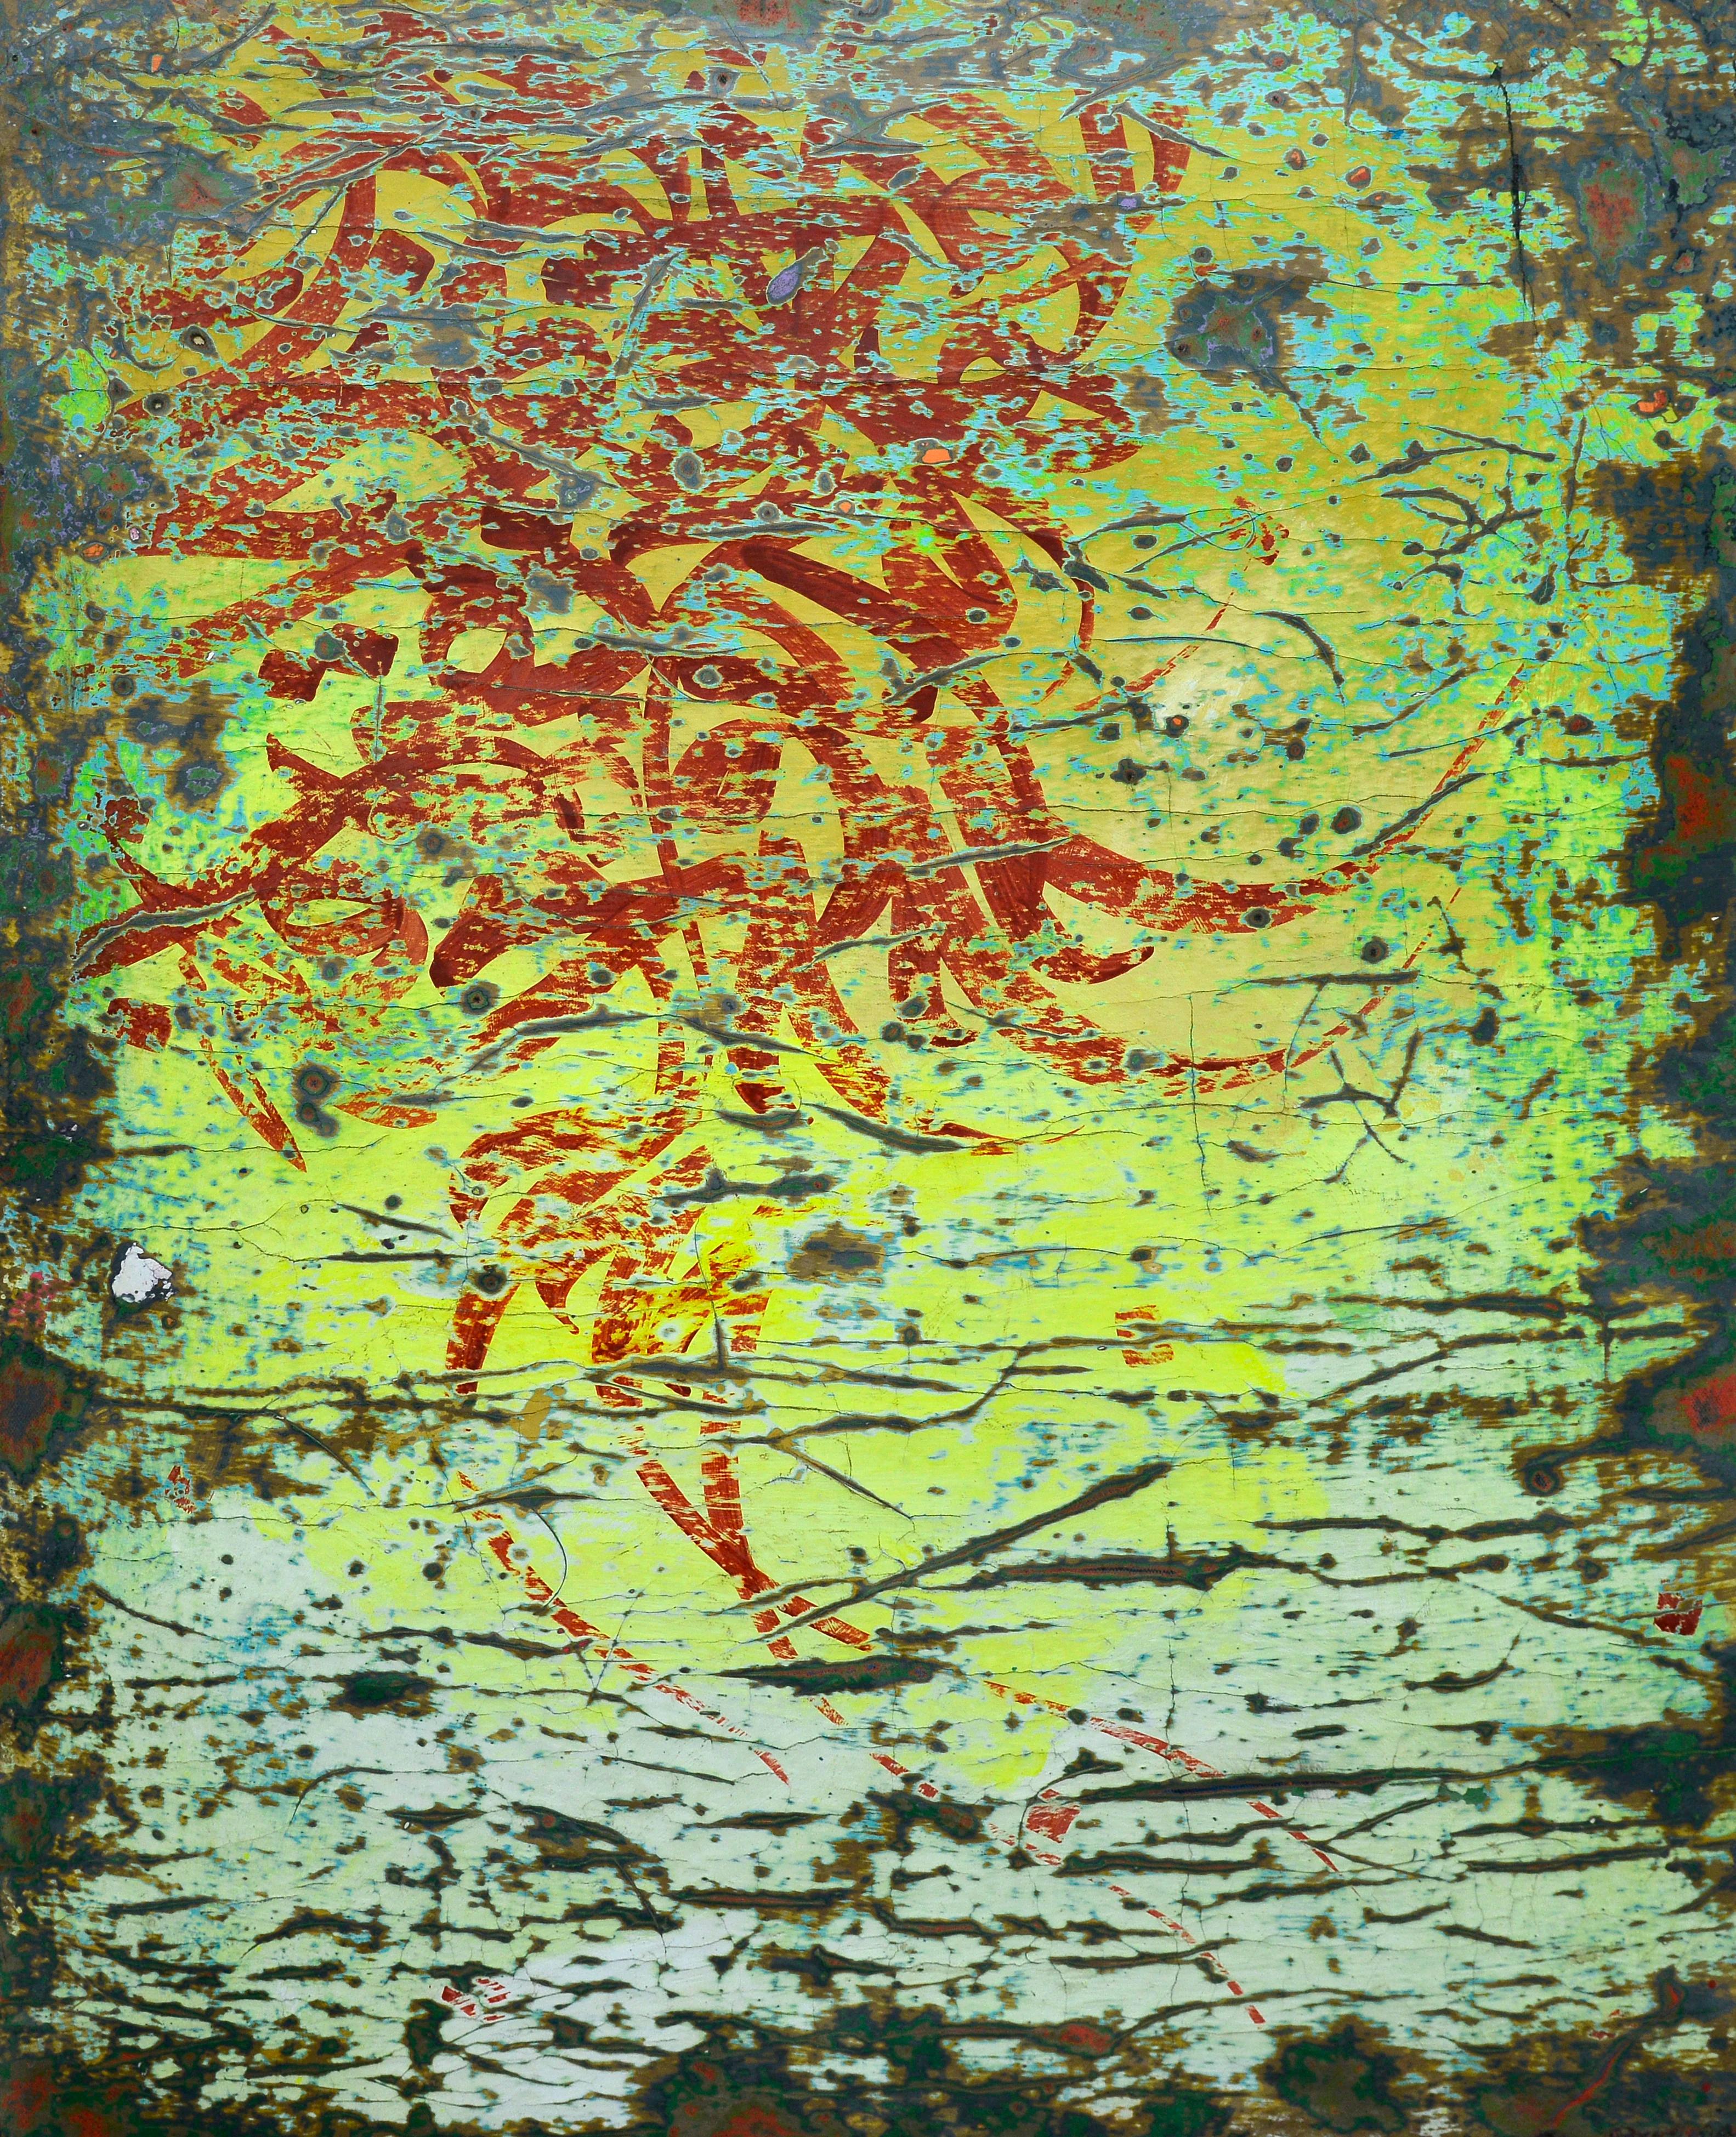 "Abstract Calligraphy" Peinture sur toile et bois 53" x 39" pouces par Ibrahim Khatab

Ibrahim Khatab est né au Caire en 1984. Il travaille comme co-enseignant à l'université du Caire et mélange dans ses œuvres la peinture, l'art vidéo et